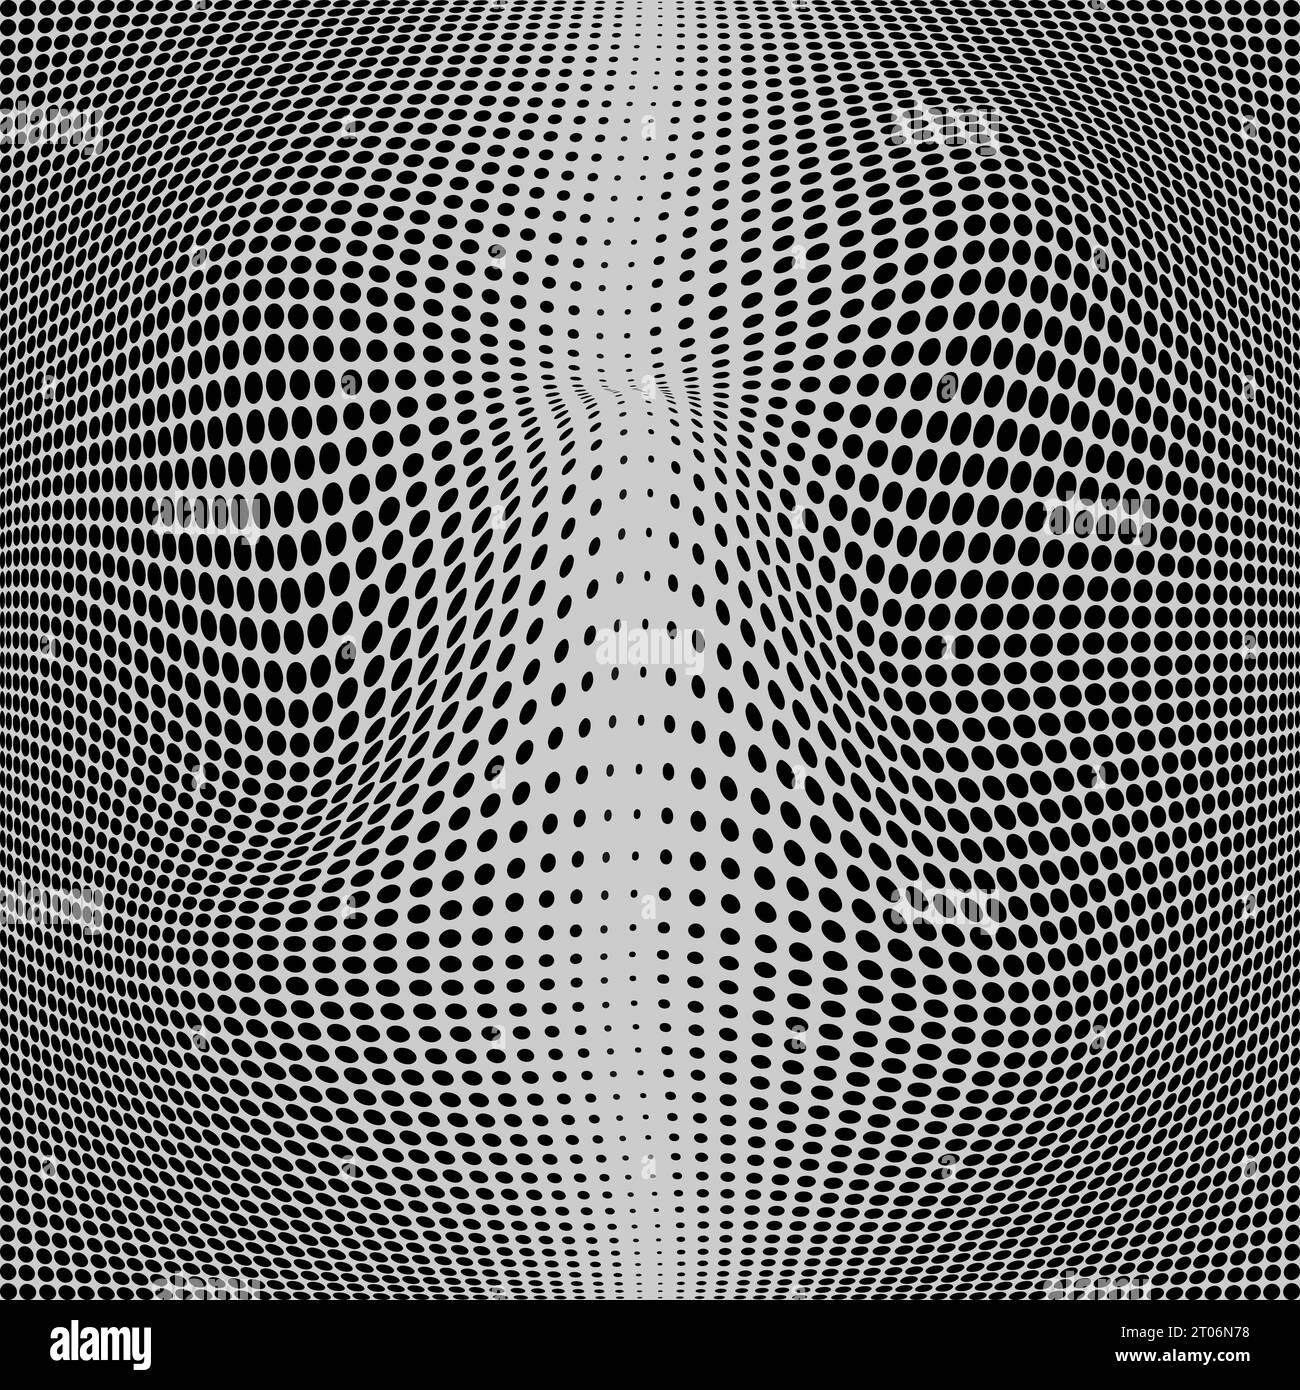 Poster psichedelico sullo sfondo dei punti liquidi neri astratti. Illusione ottica design futuristico elemento illustrazione vettoriale isolata su sfondo grigio Illustrazione Vettoriale